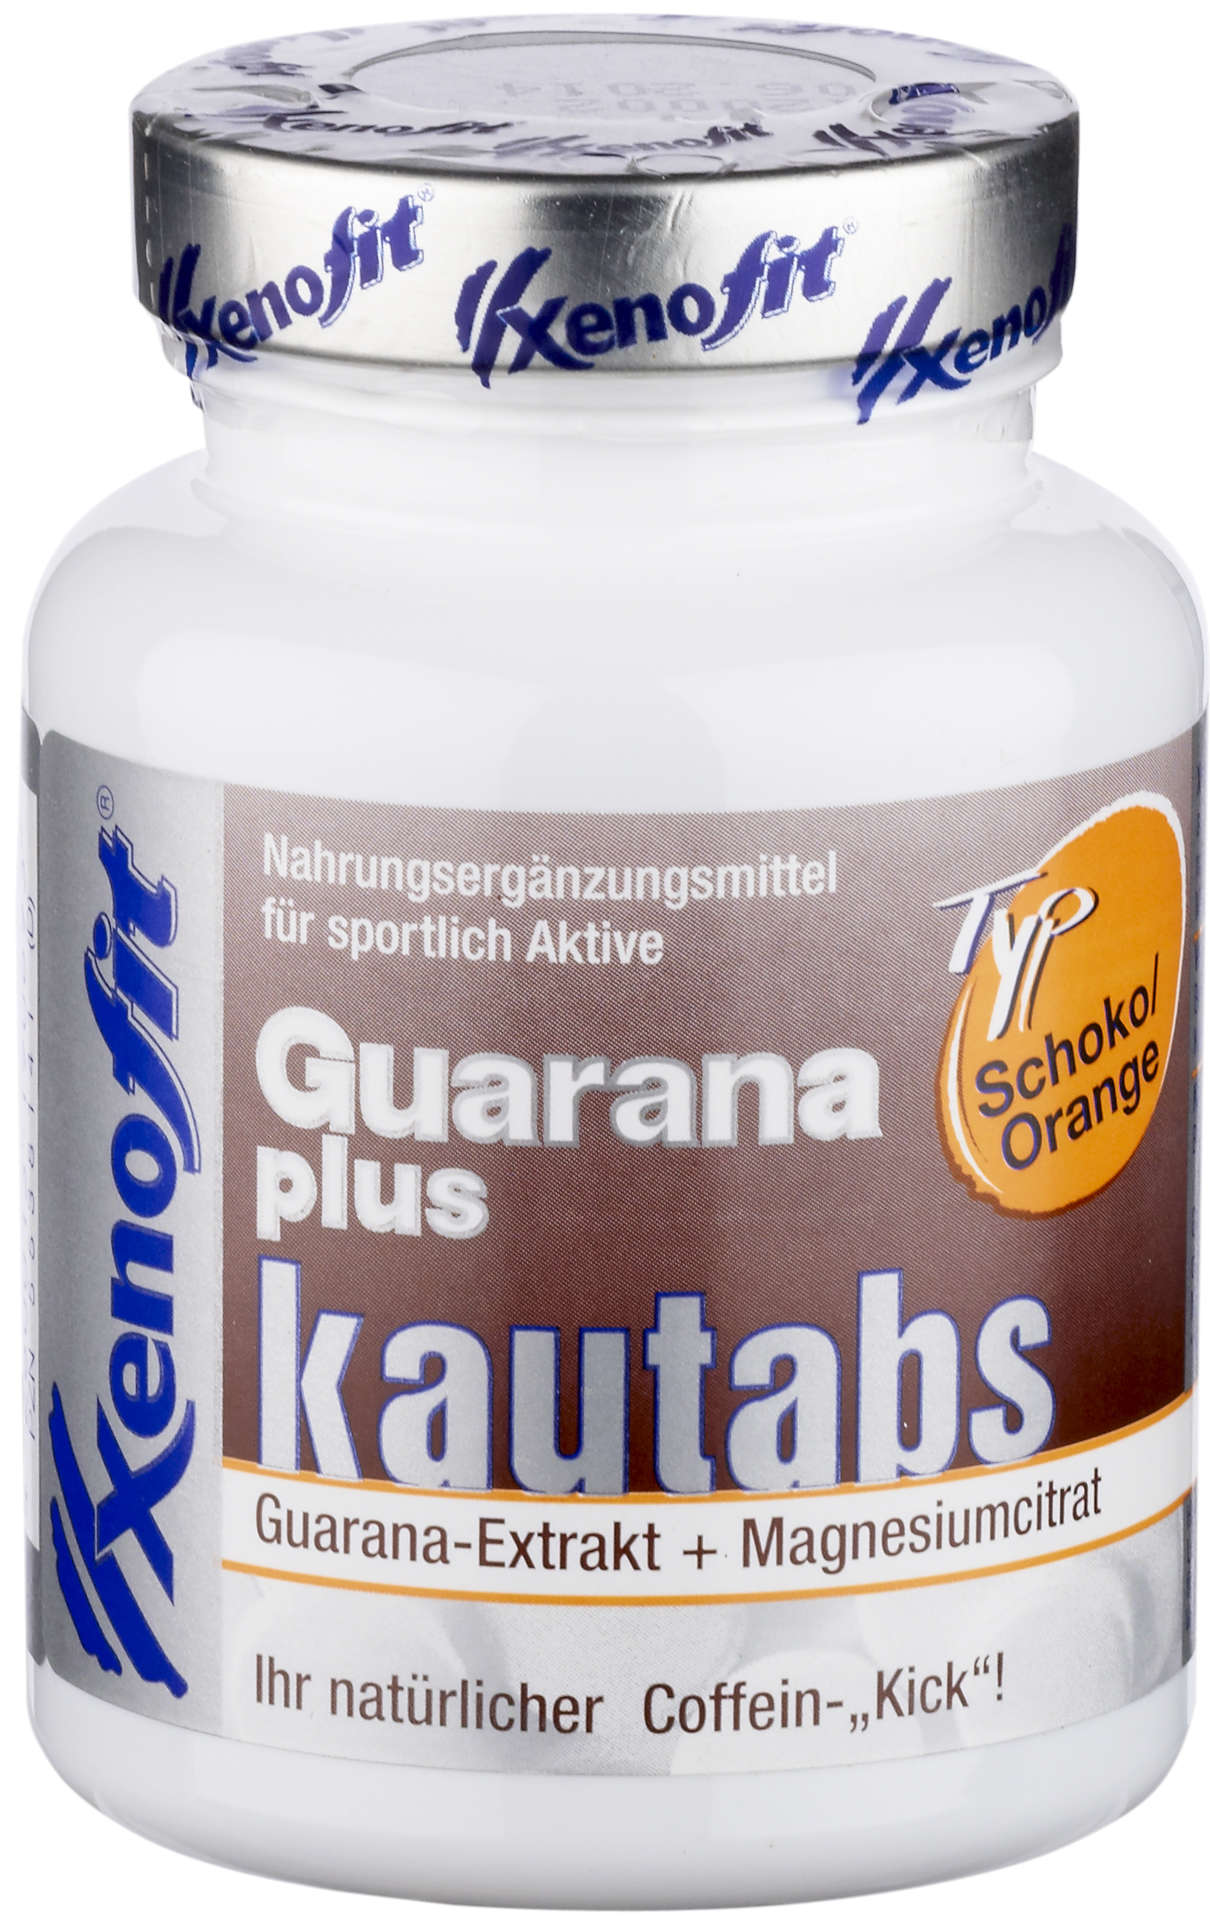 Xenofit Guarana Plus Tabletten Choco/Sinaasappel 40 stuks